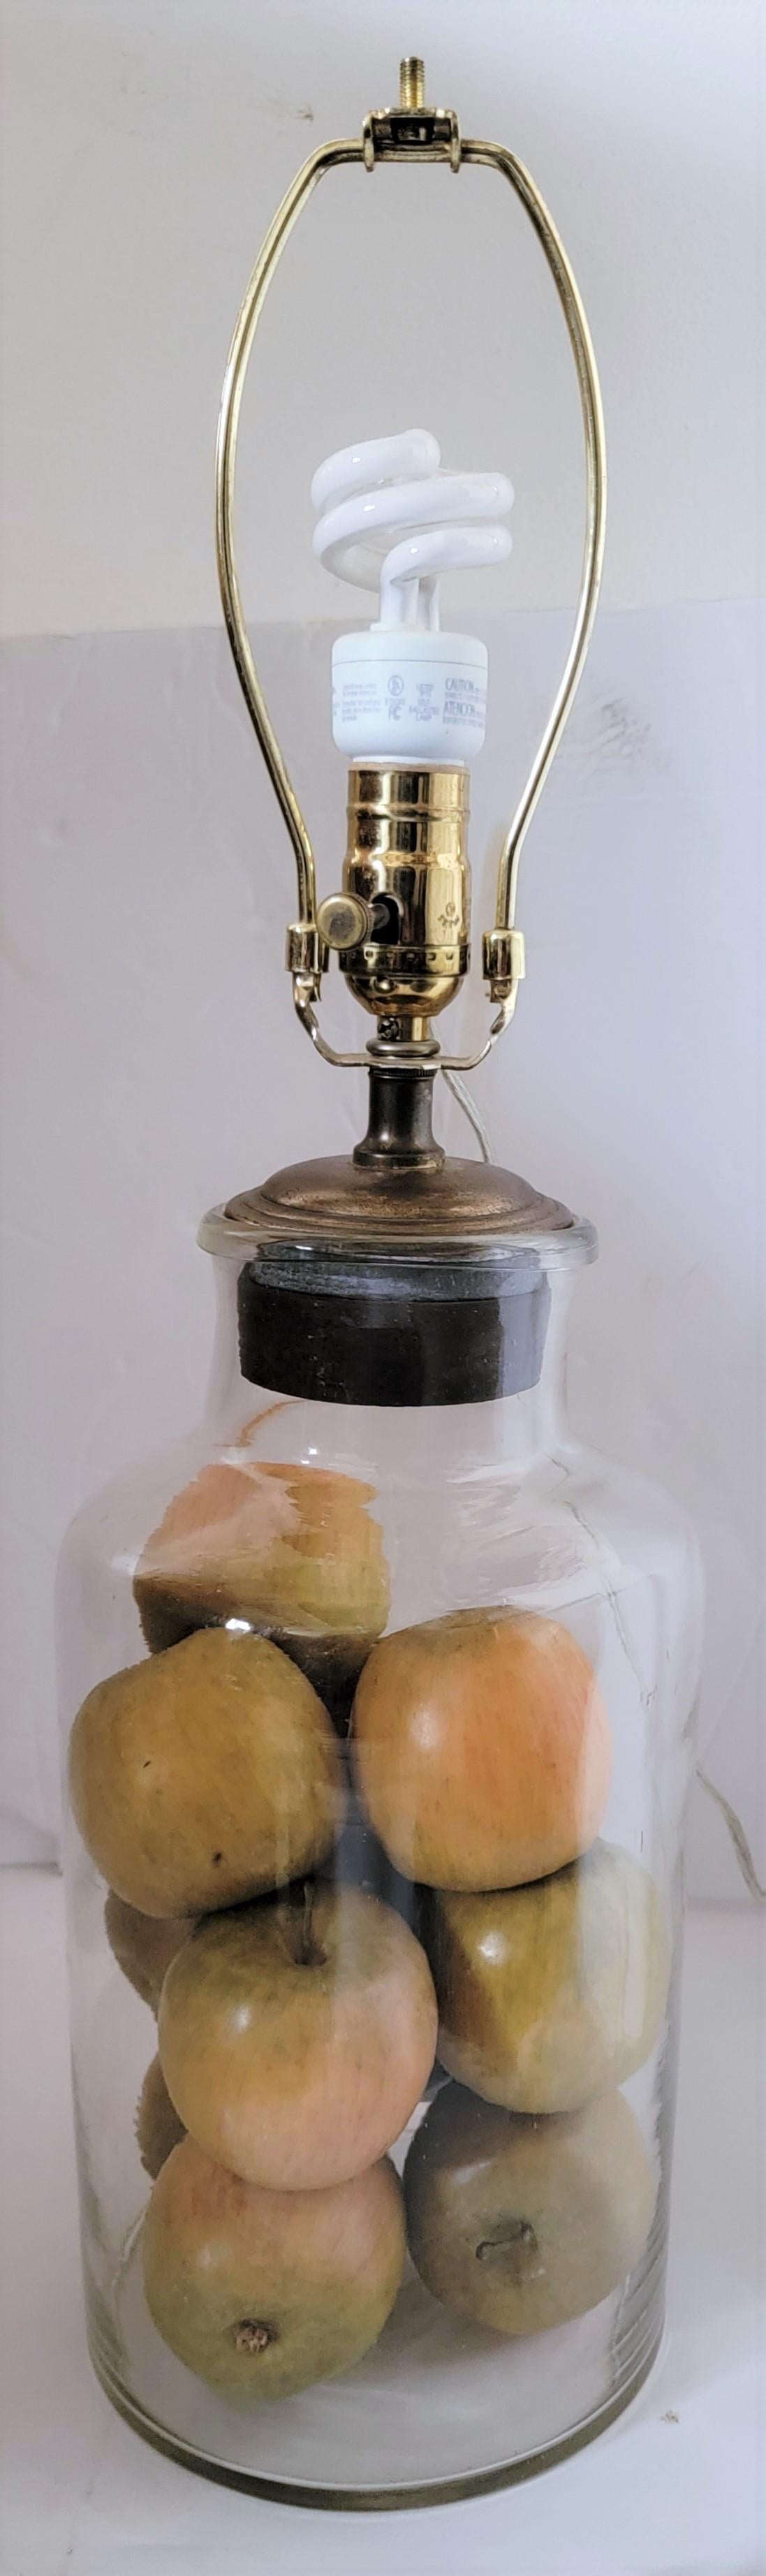 Lampe soufflée à la main avec abat-jour en étain aux fruits et au punch étoilé

 bouteille/vase mesure - 7 diamètre x 14 hauteur

l'abat-jour mesure - 14 de diamètre x 10,5 de hauteur 

Mesures complètes - 26,5 haut (avec Finial) 14 diamètre.